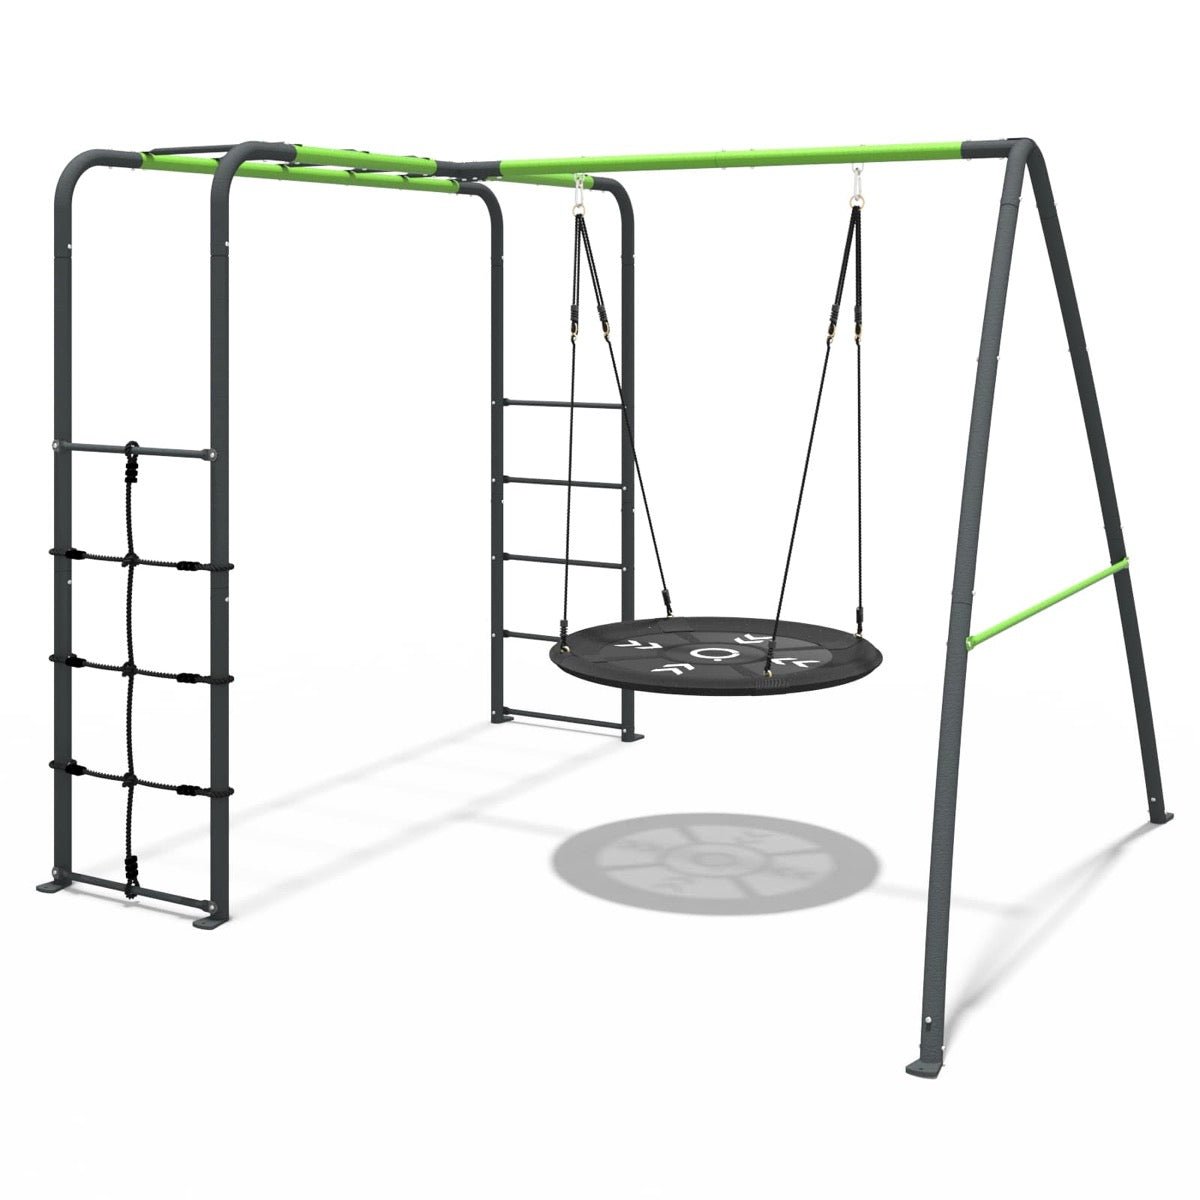 Rebo Steel Series Metal Swing Set with Monkey Bars - Nest Swing Green